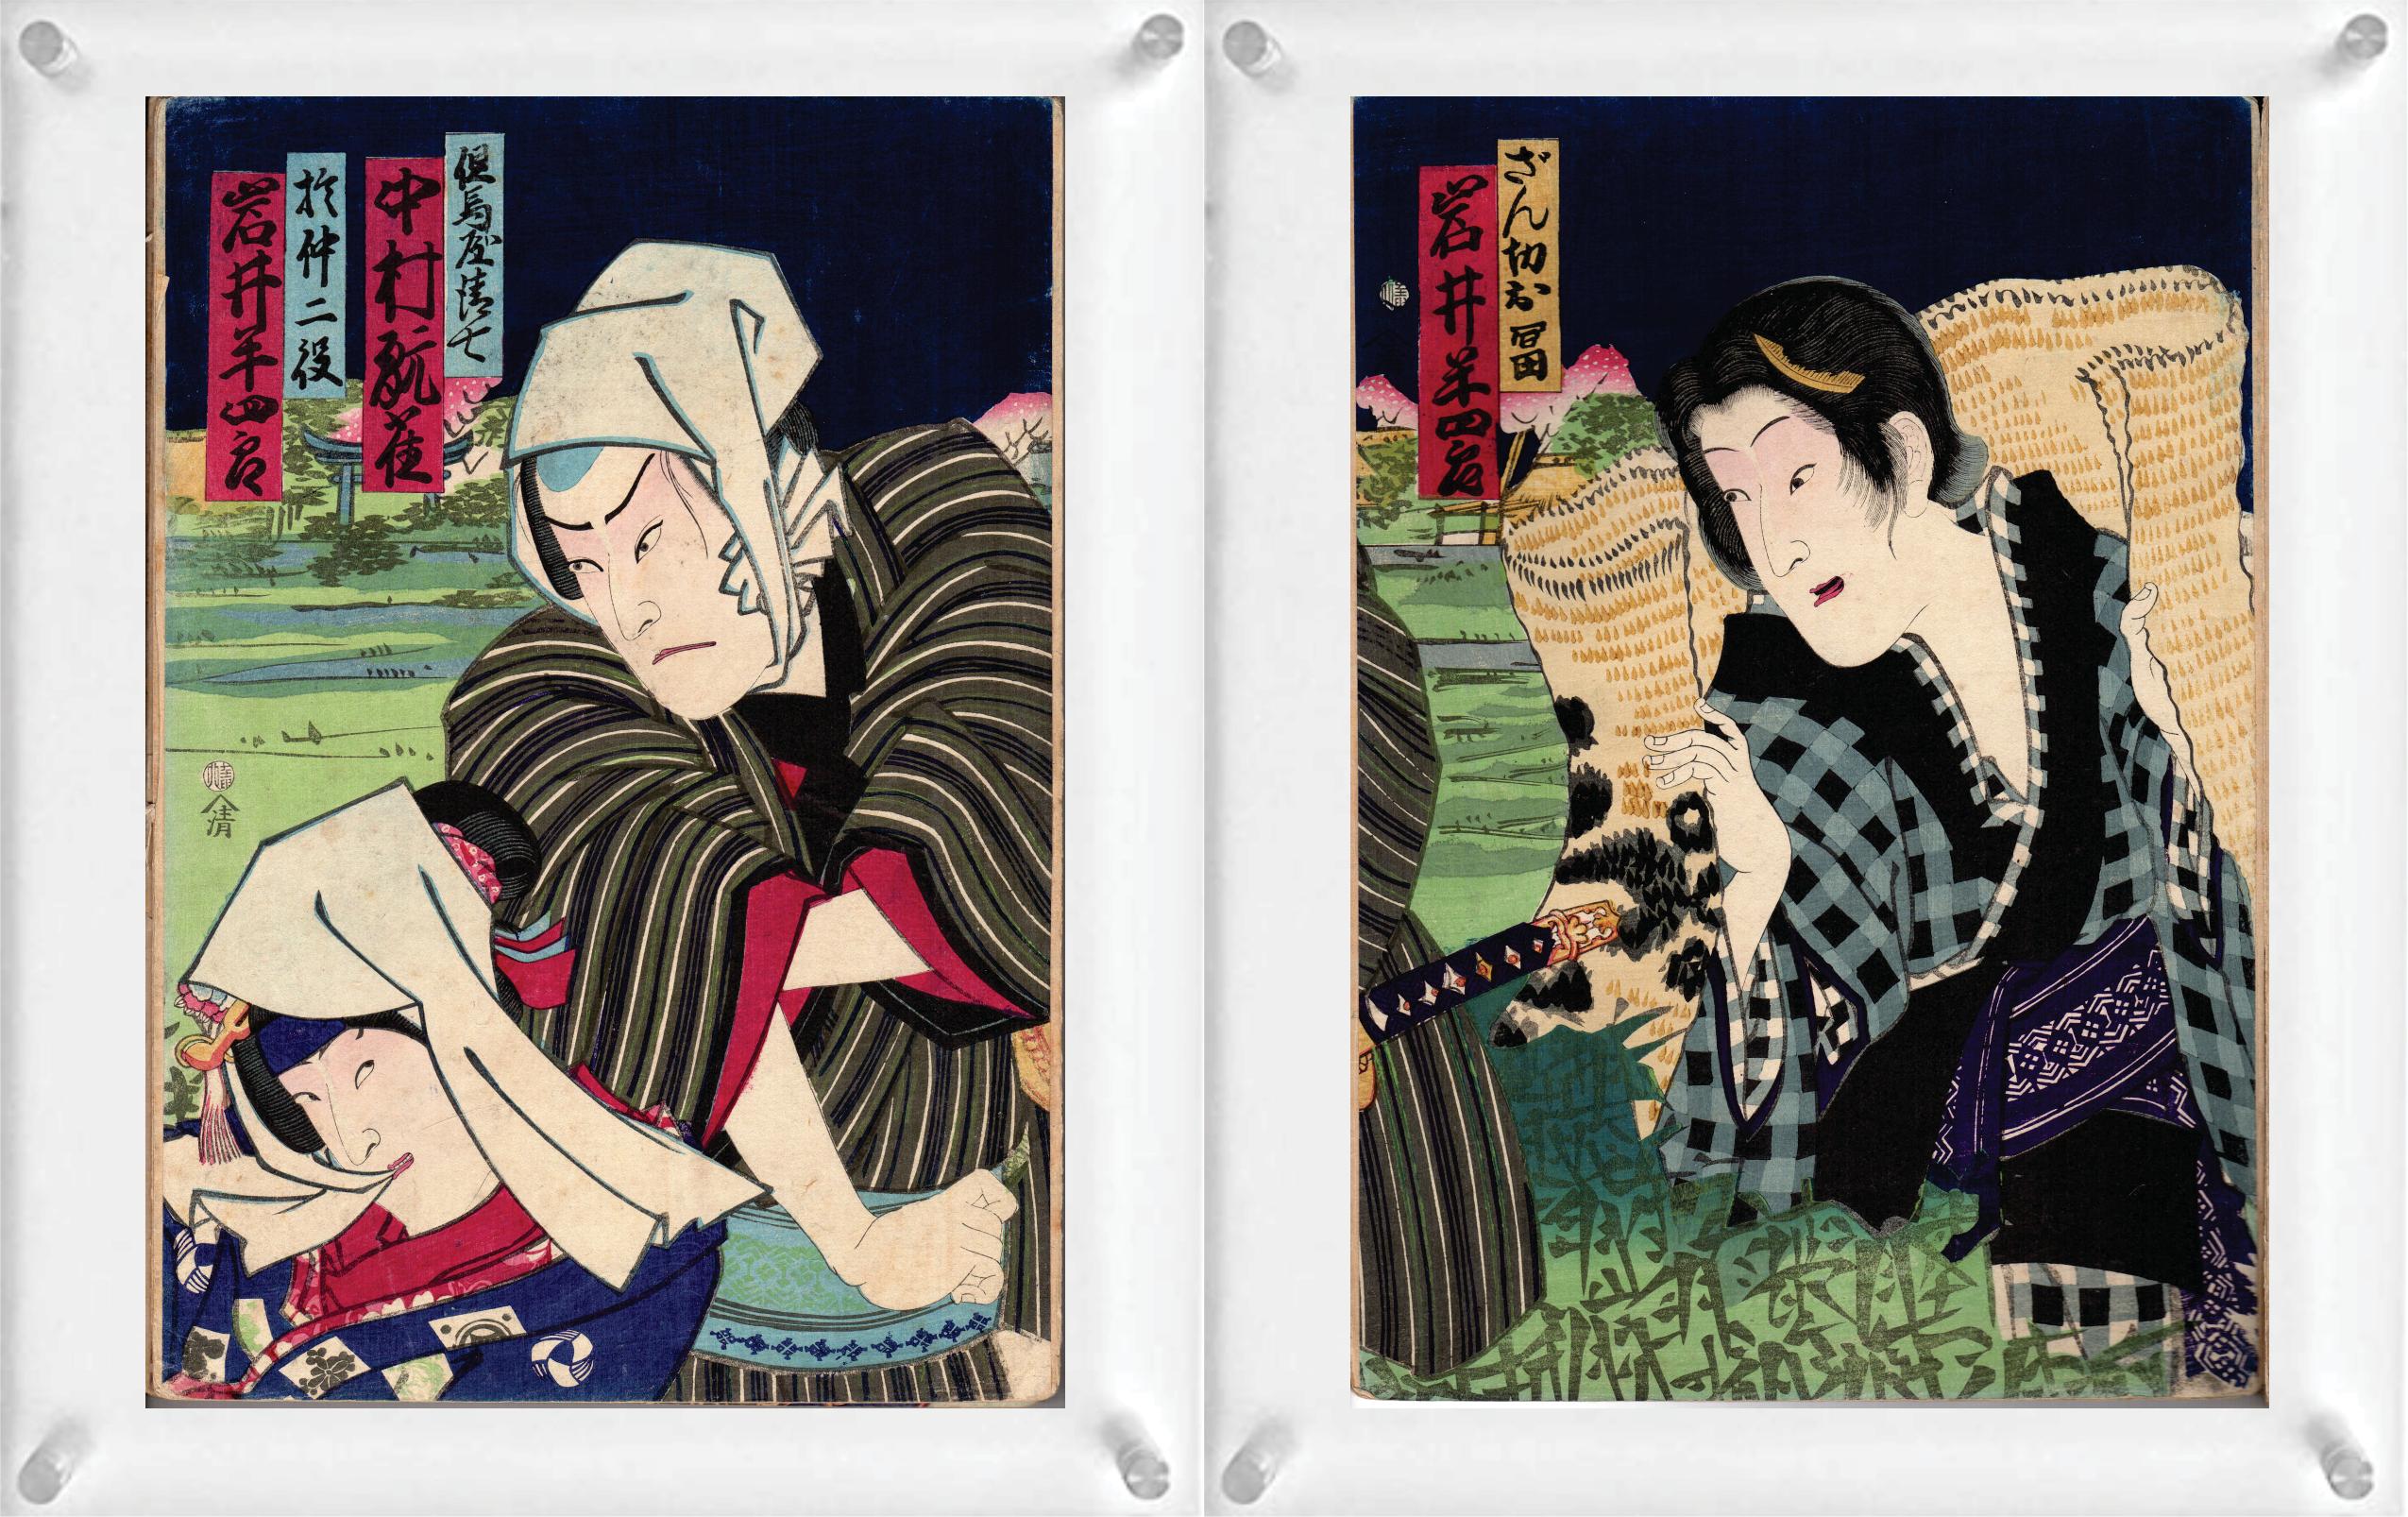 4 japanische Farbholzschnitte (Doppelseite) von Toyohara Kunichika (Diptychon) und Shosai Ikkei - aus Sechsunddreißig Comics der berühmten Orte von Tokio.

Hinweis: Es handelt sich nur um zwei Holzschnitte mit 4 Bildern. Sie sind doppelseitig mit